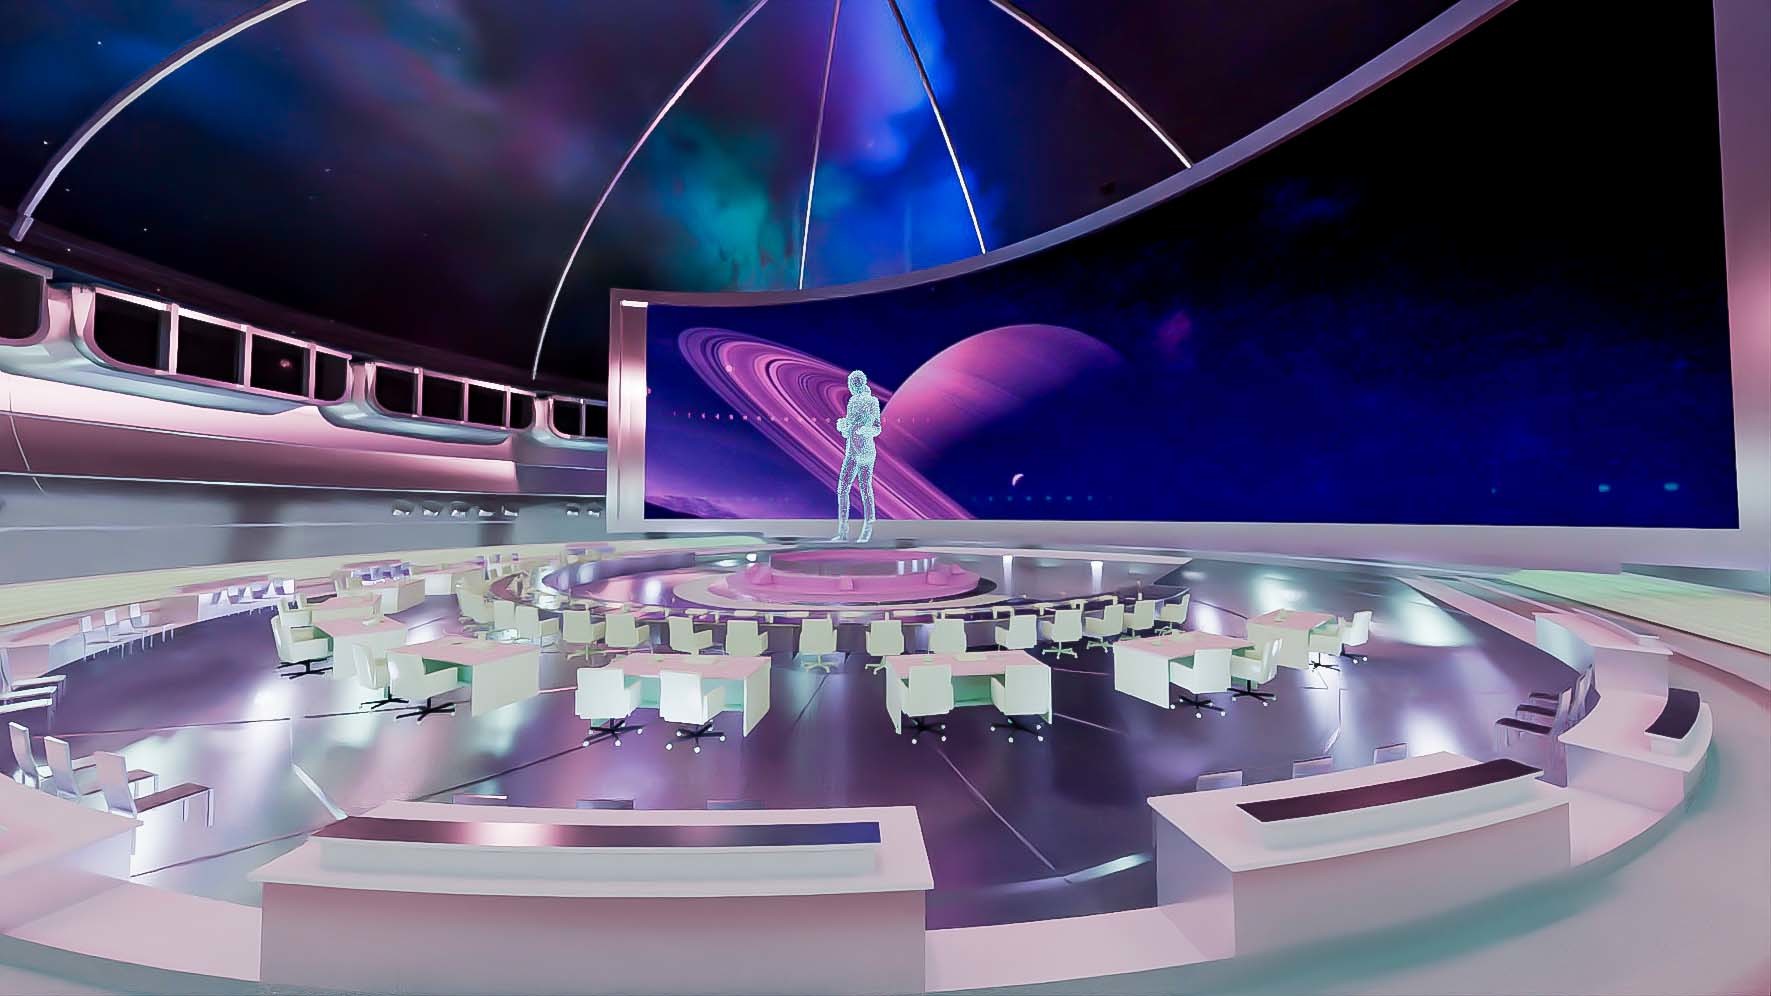 这是一张未来风格的室内设计图，中心有人形雕塑，周围是座椅，背景为太空主题，色彩斑斓，科幻感十足。